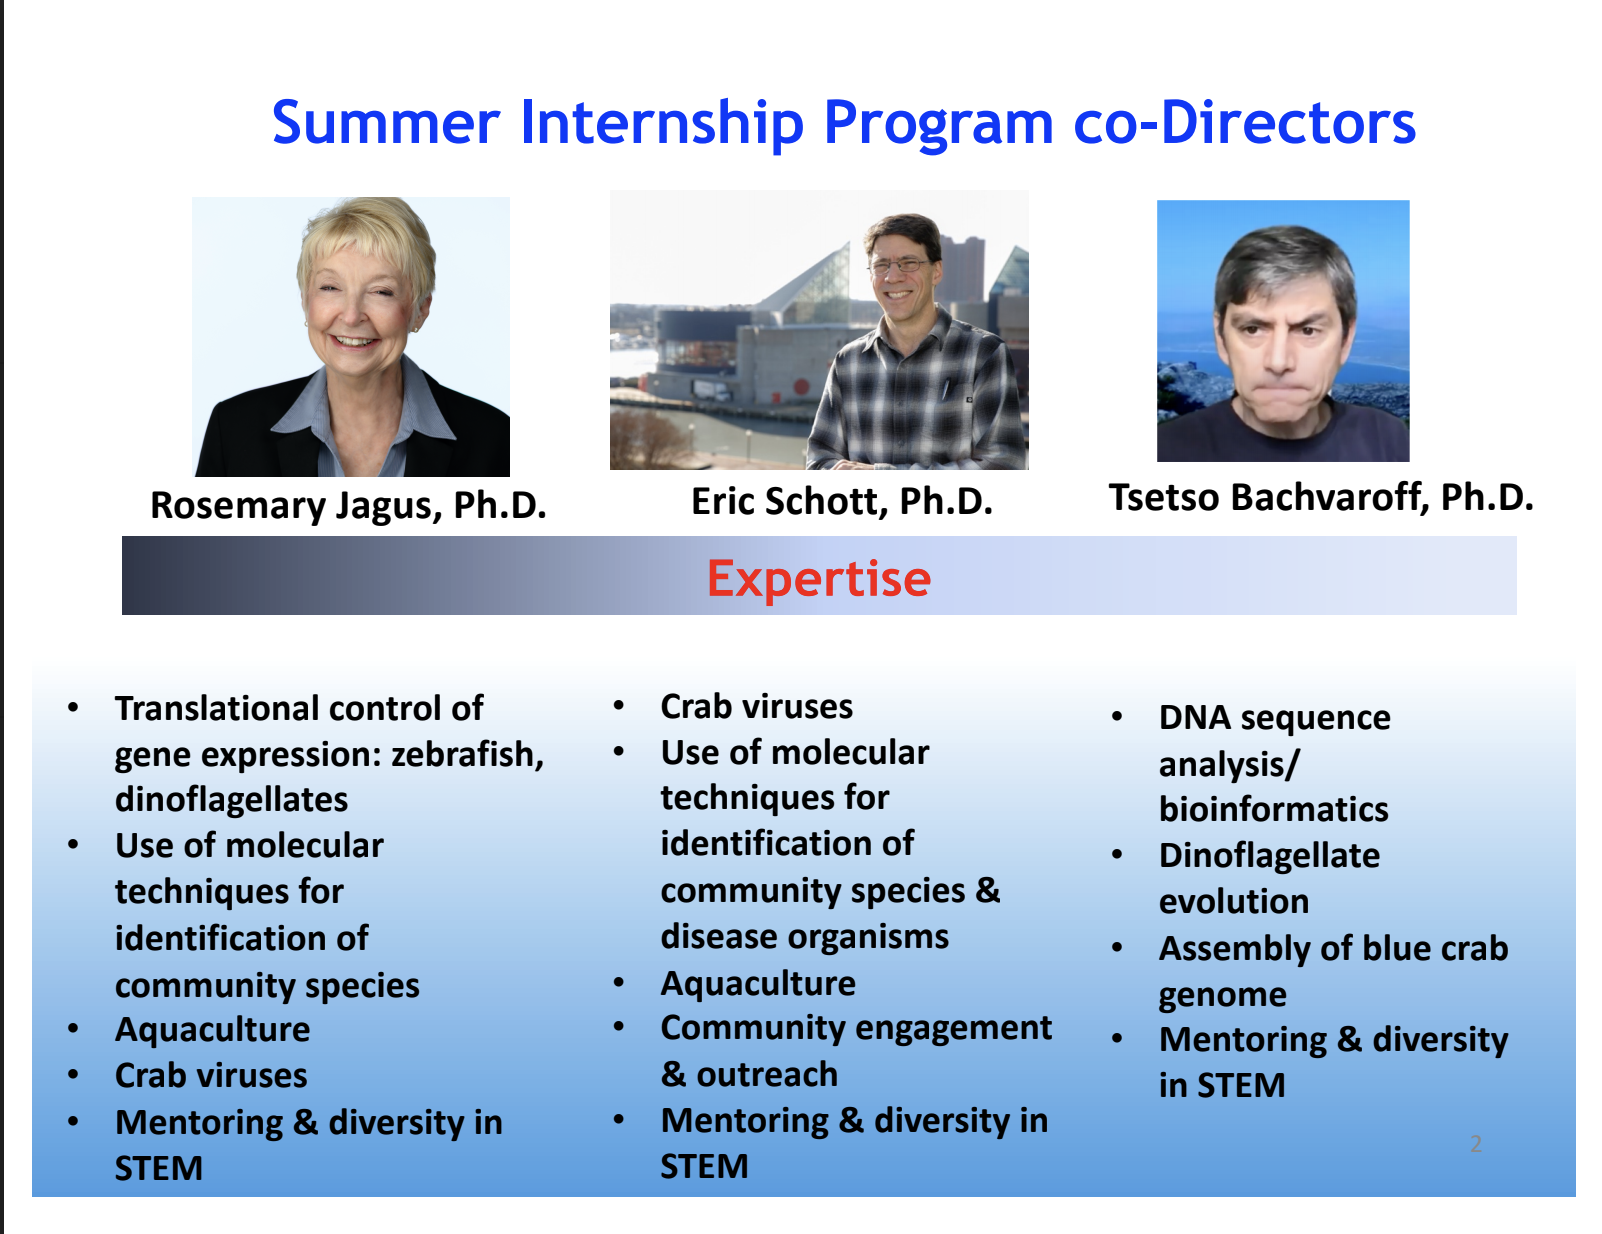 Summer internship co-directors: Rosemary Jagus, Eric Schott, Tsetso Bachvaroff